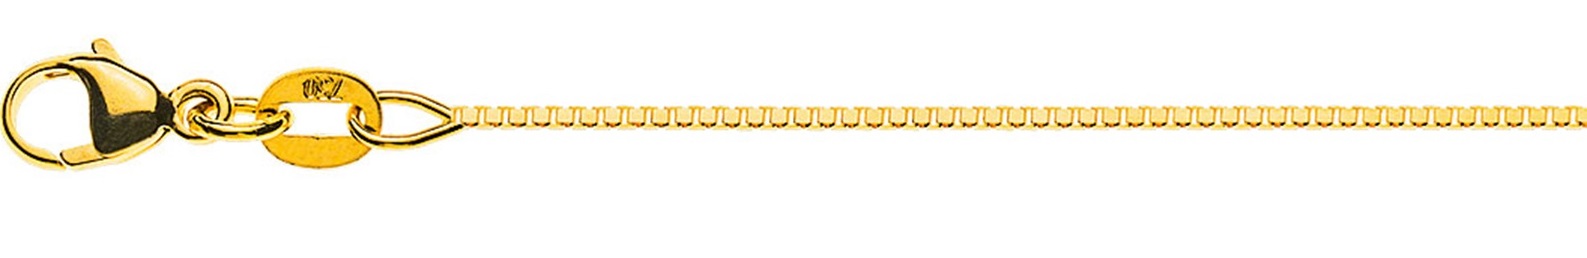 AURONOS Prestige Halskette Gelbgold 18K Venezianerkette diamantiert 36cm 0.8mm